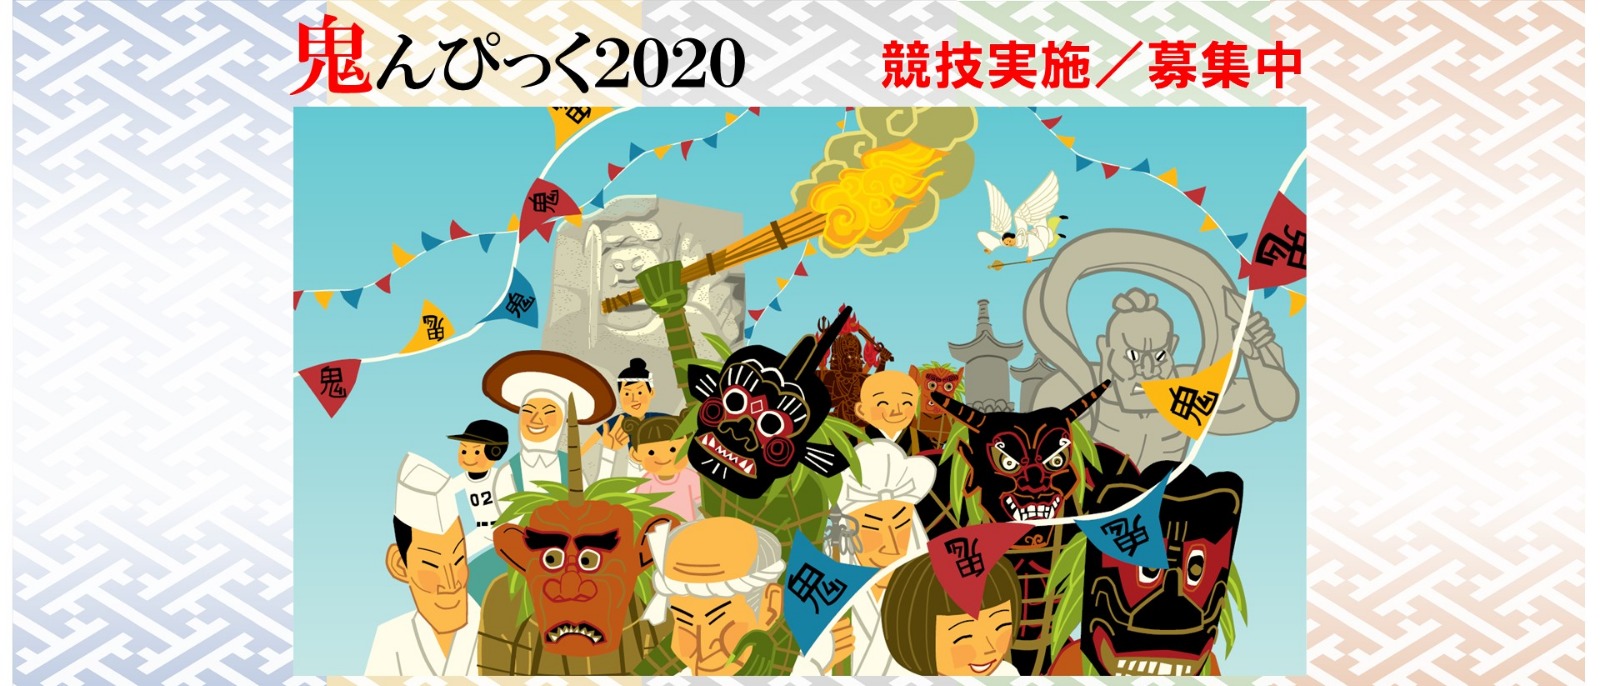 鬼んぴっく２０２０（Kunisaki Onimpic Games 2020）競技種目募集